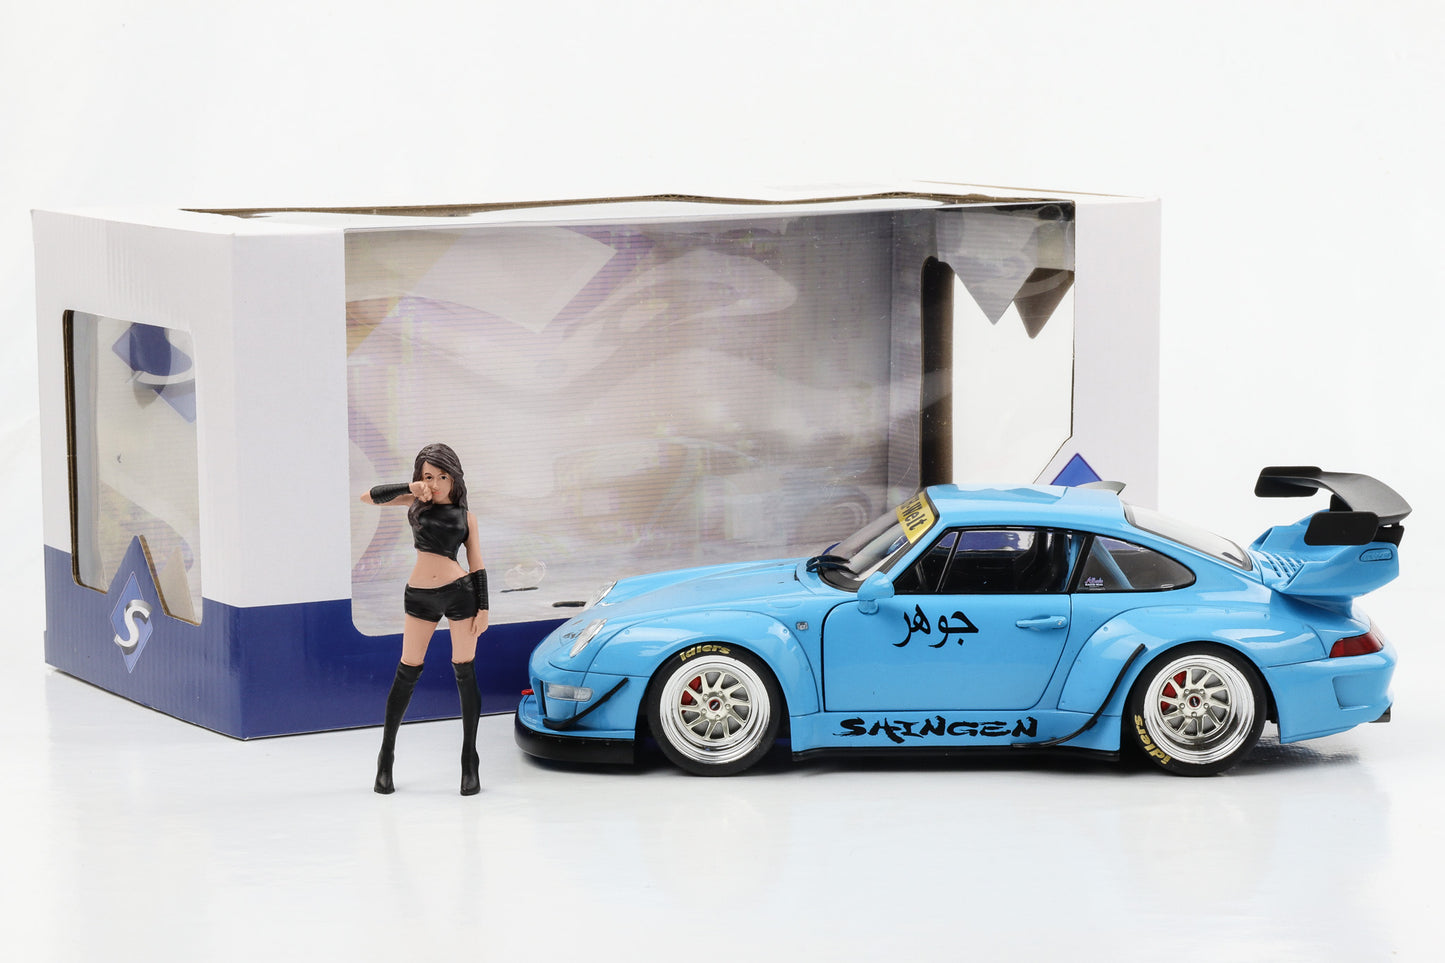 1:18 Porsche 911 993 Turbo RWB Rauh-Welt Shingen mit 1 Figur 2018 blau Solido